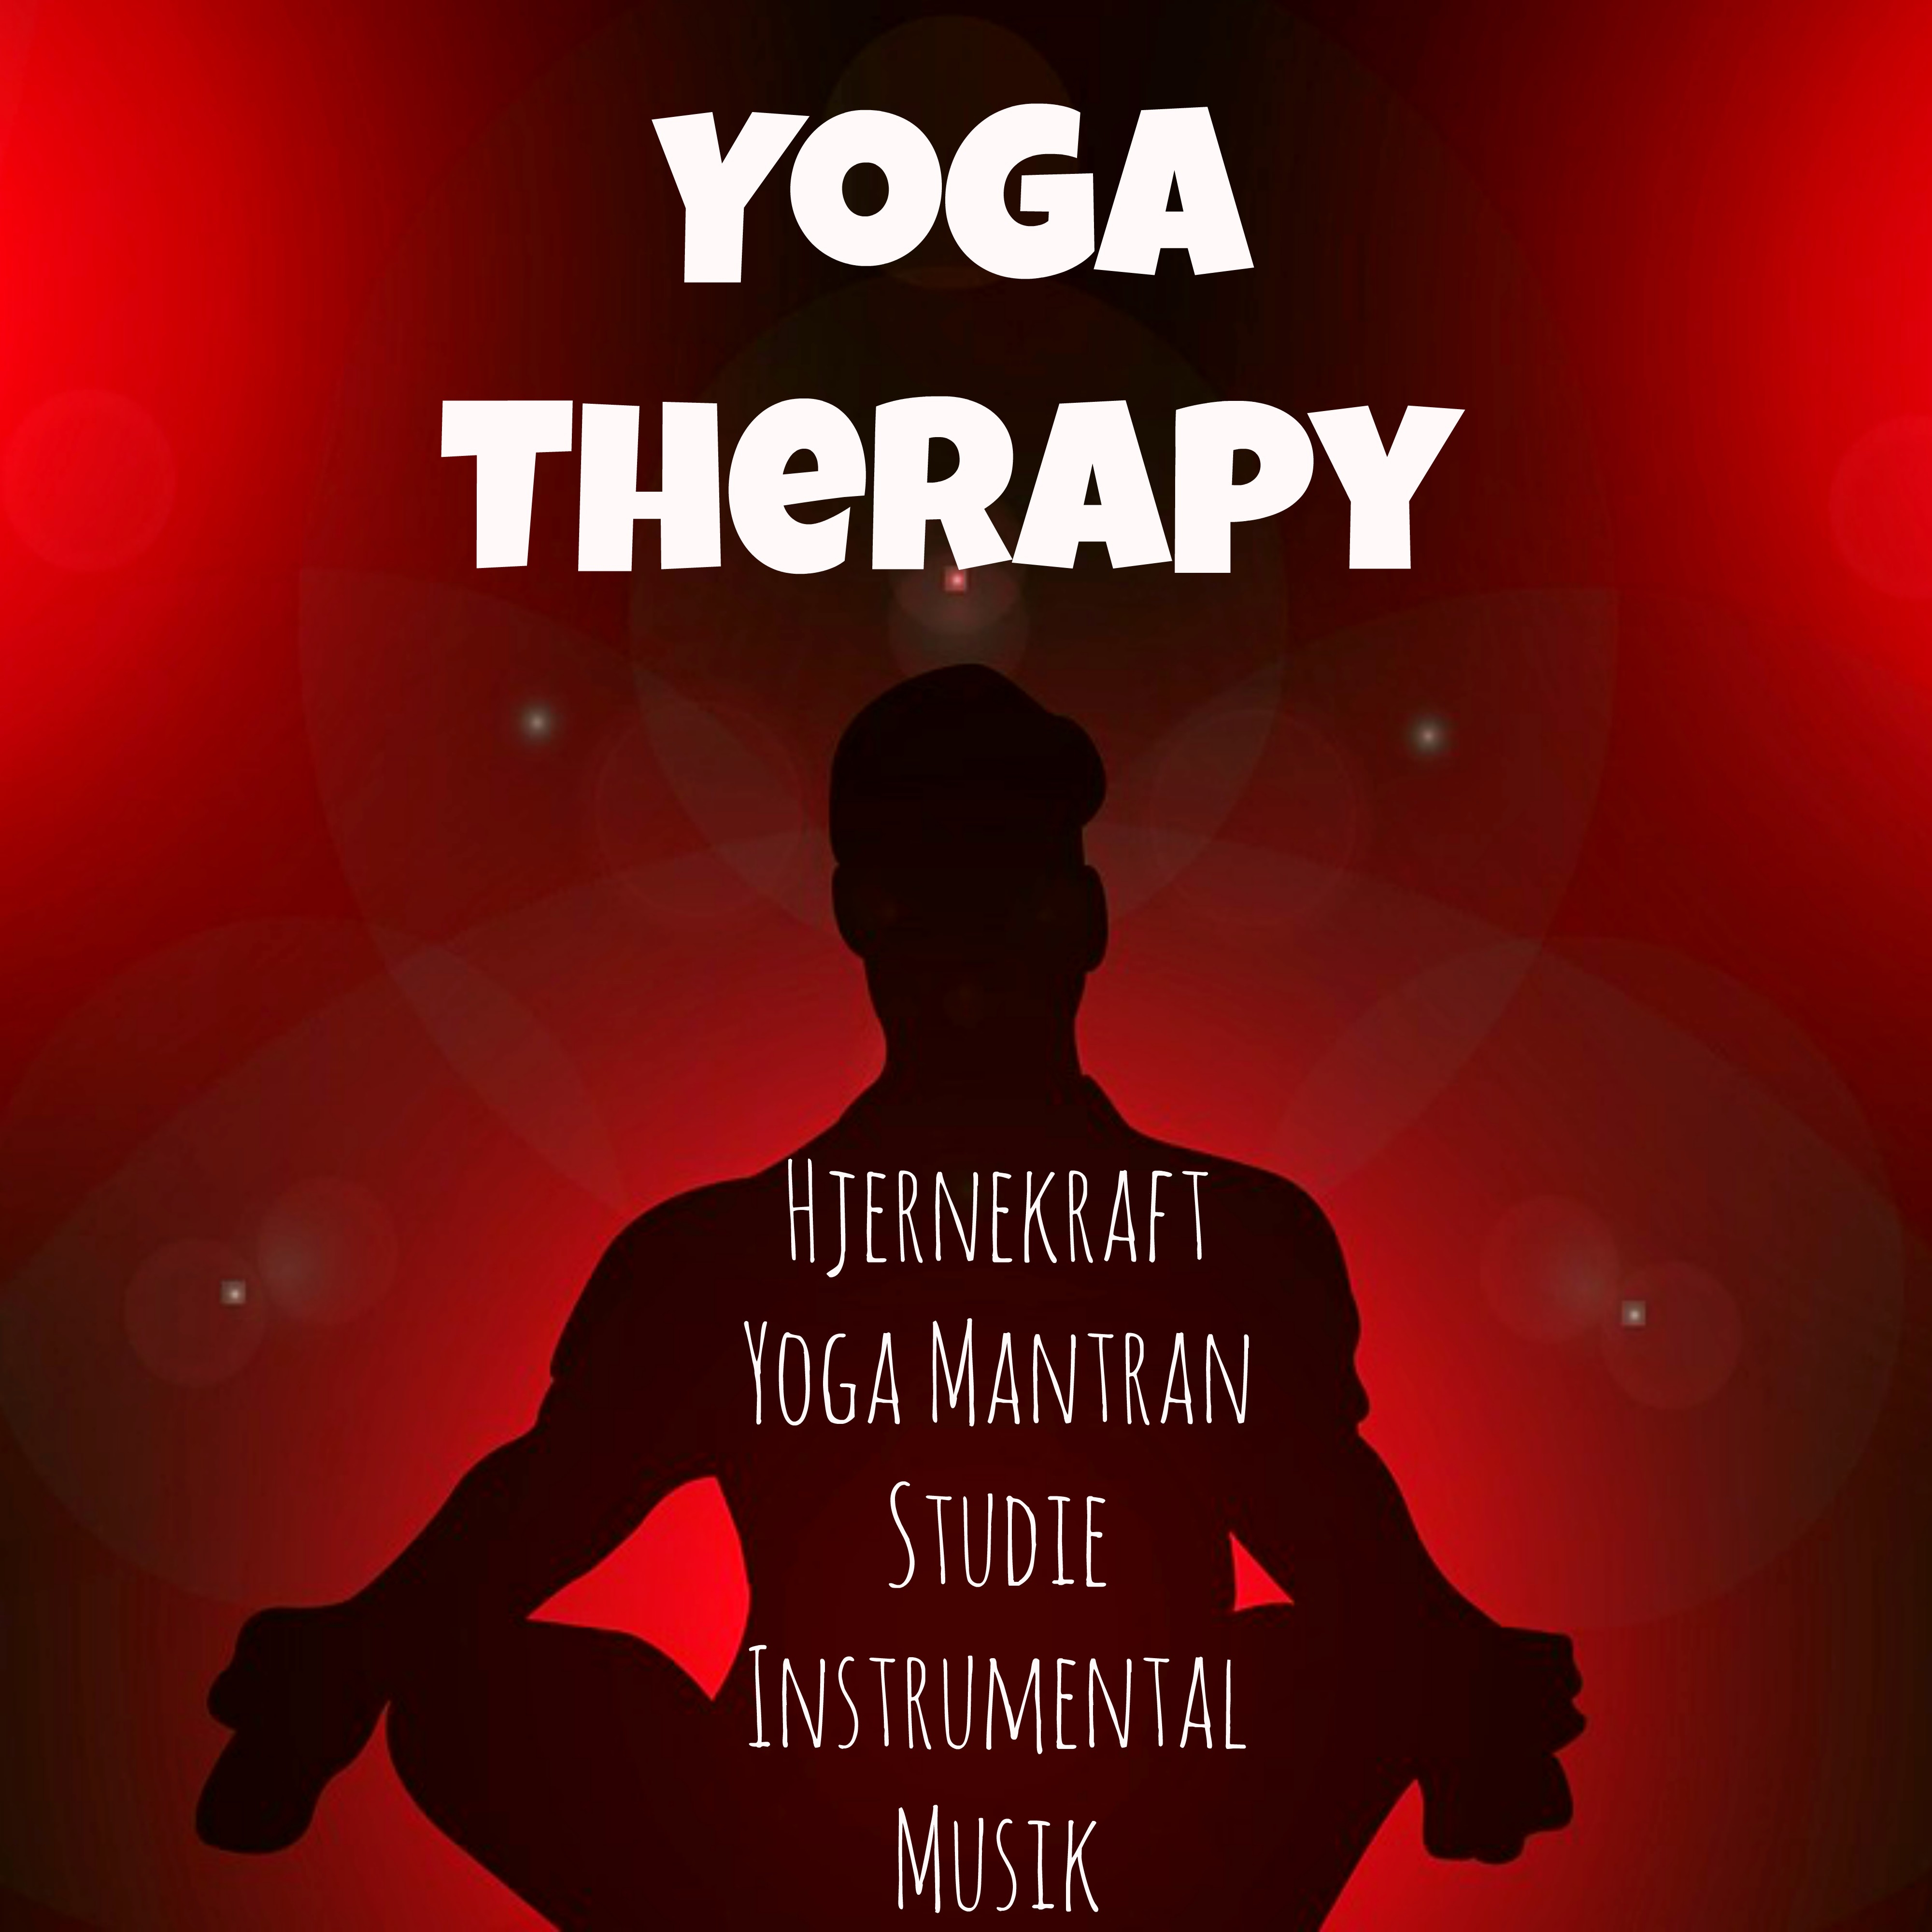 Yoga Therapy - Hjernekraft Yoga Mantran Studie Instrumental Musik för Minska Ångest Chakrafärger och Bättre Sömn